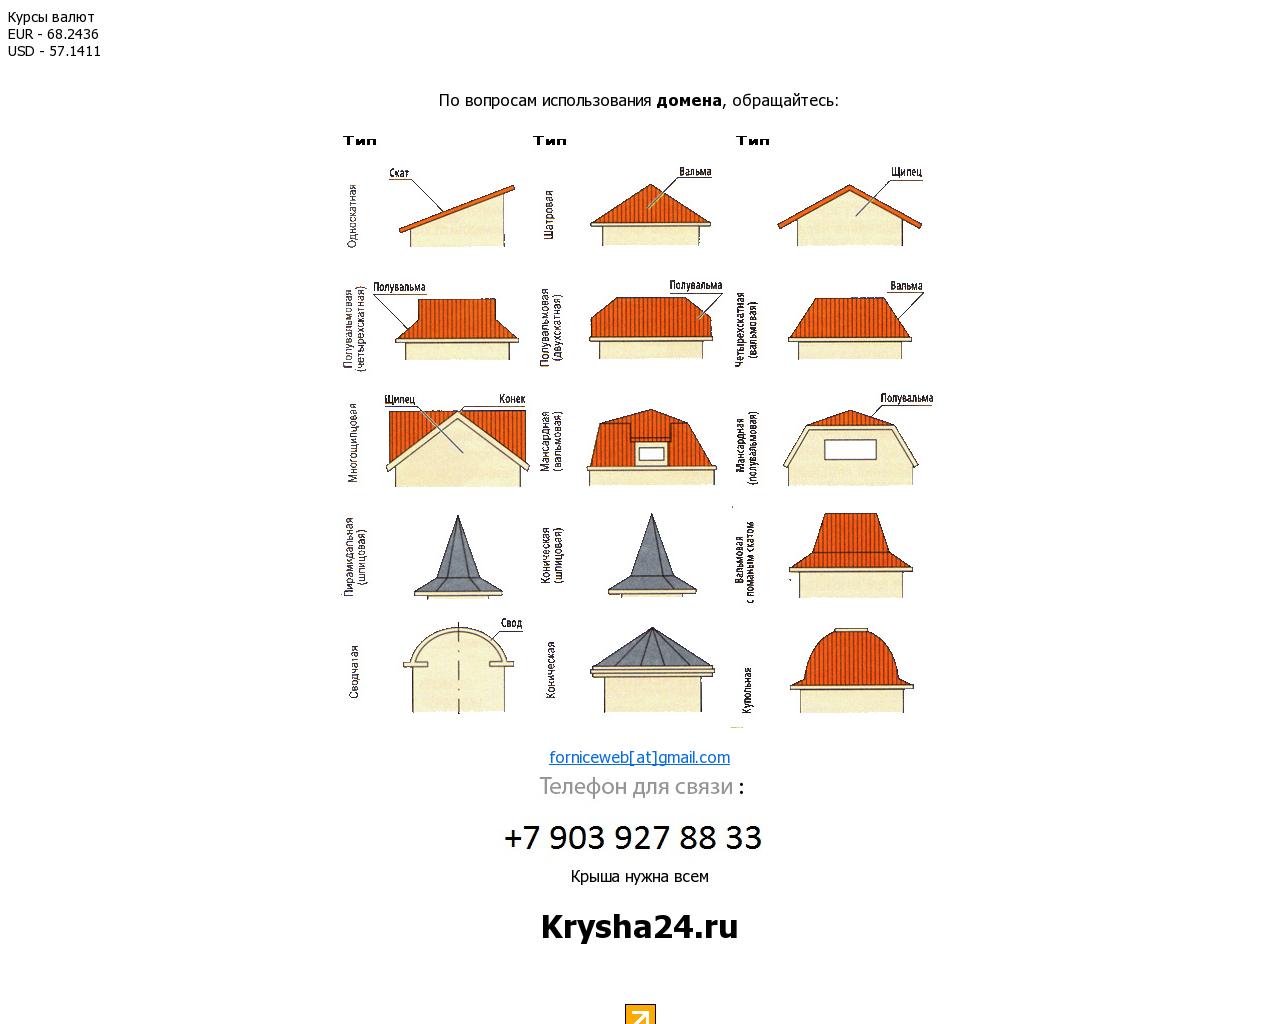 Изображение сайта krysha24.ru в разрешении 1280x1024